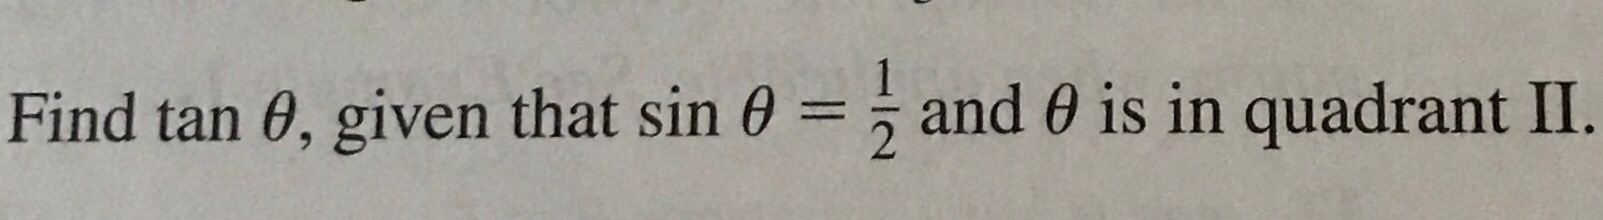 Find tan θ, given that sin θ
and θ is in quadrant II.
